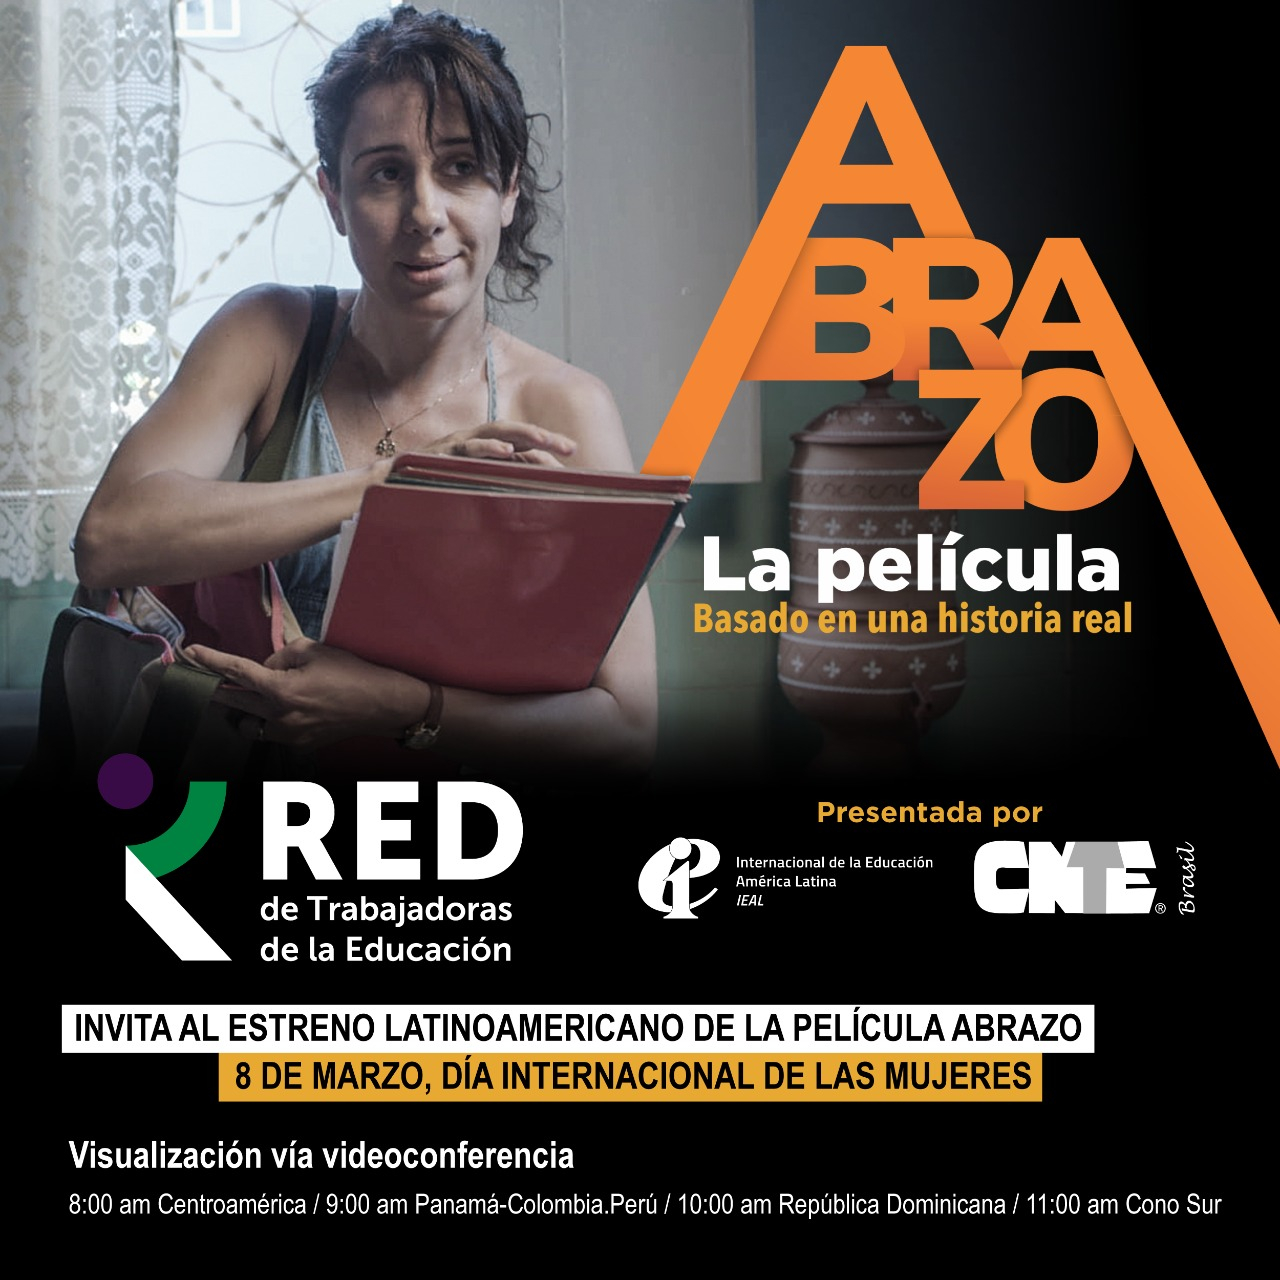 RED de Trabajadoras de la Educación se une en un abrazo latinoamericano de lucha 